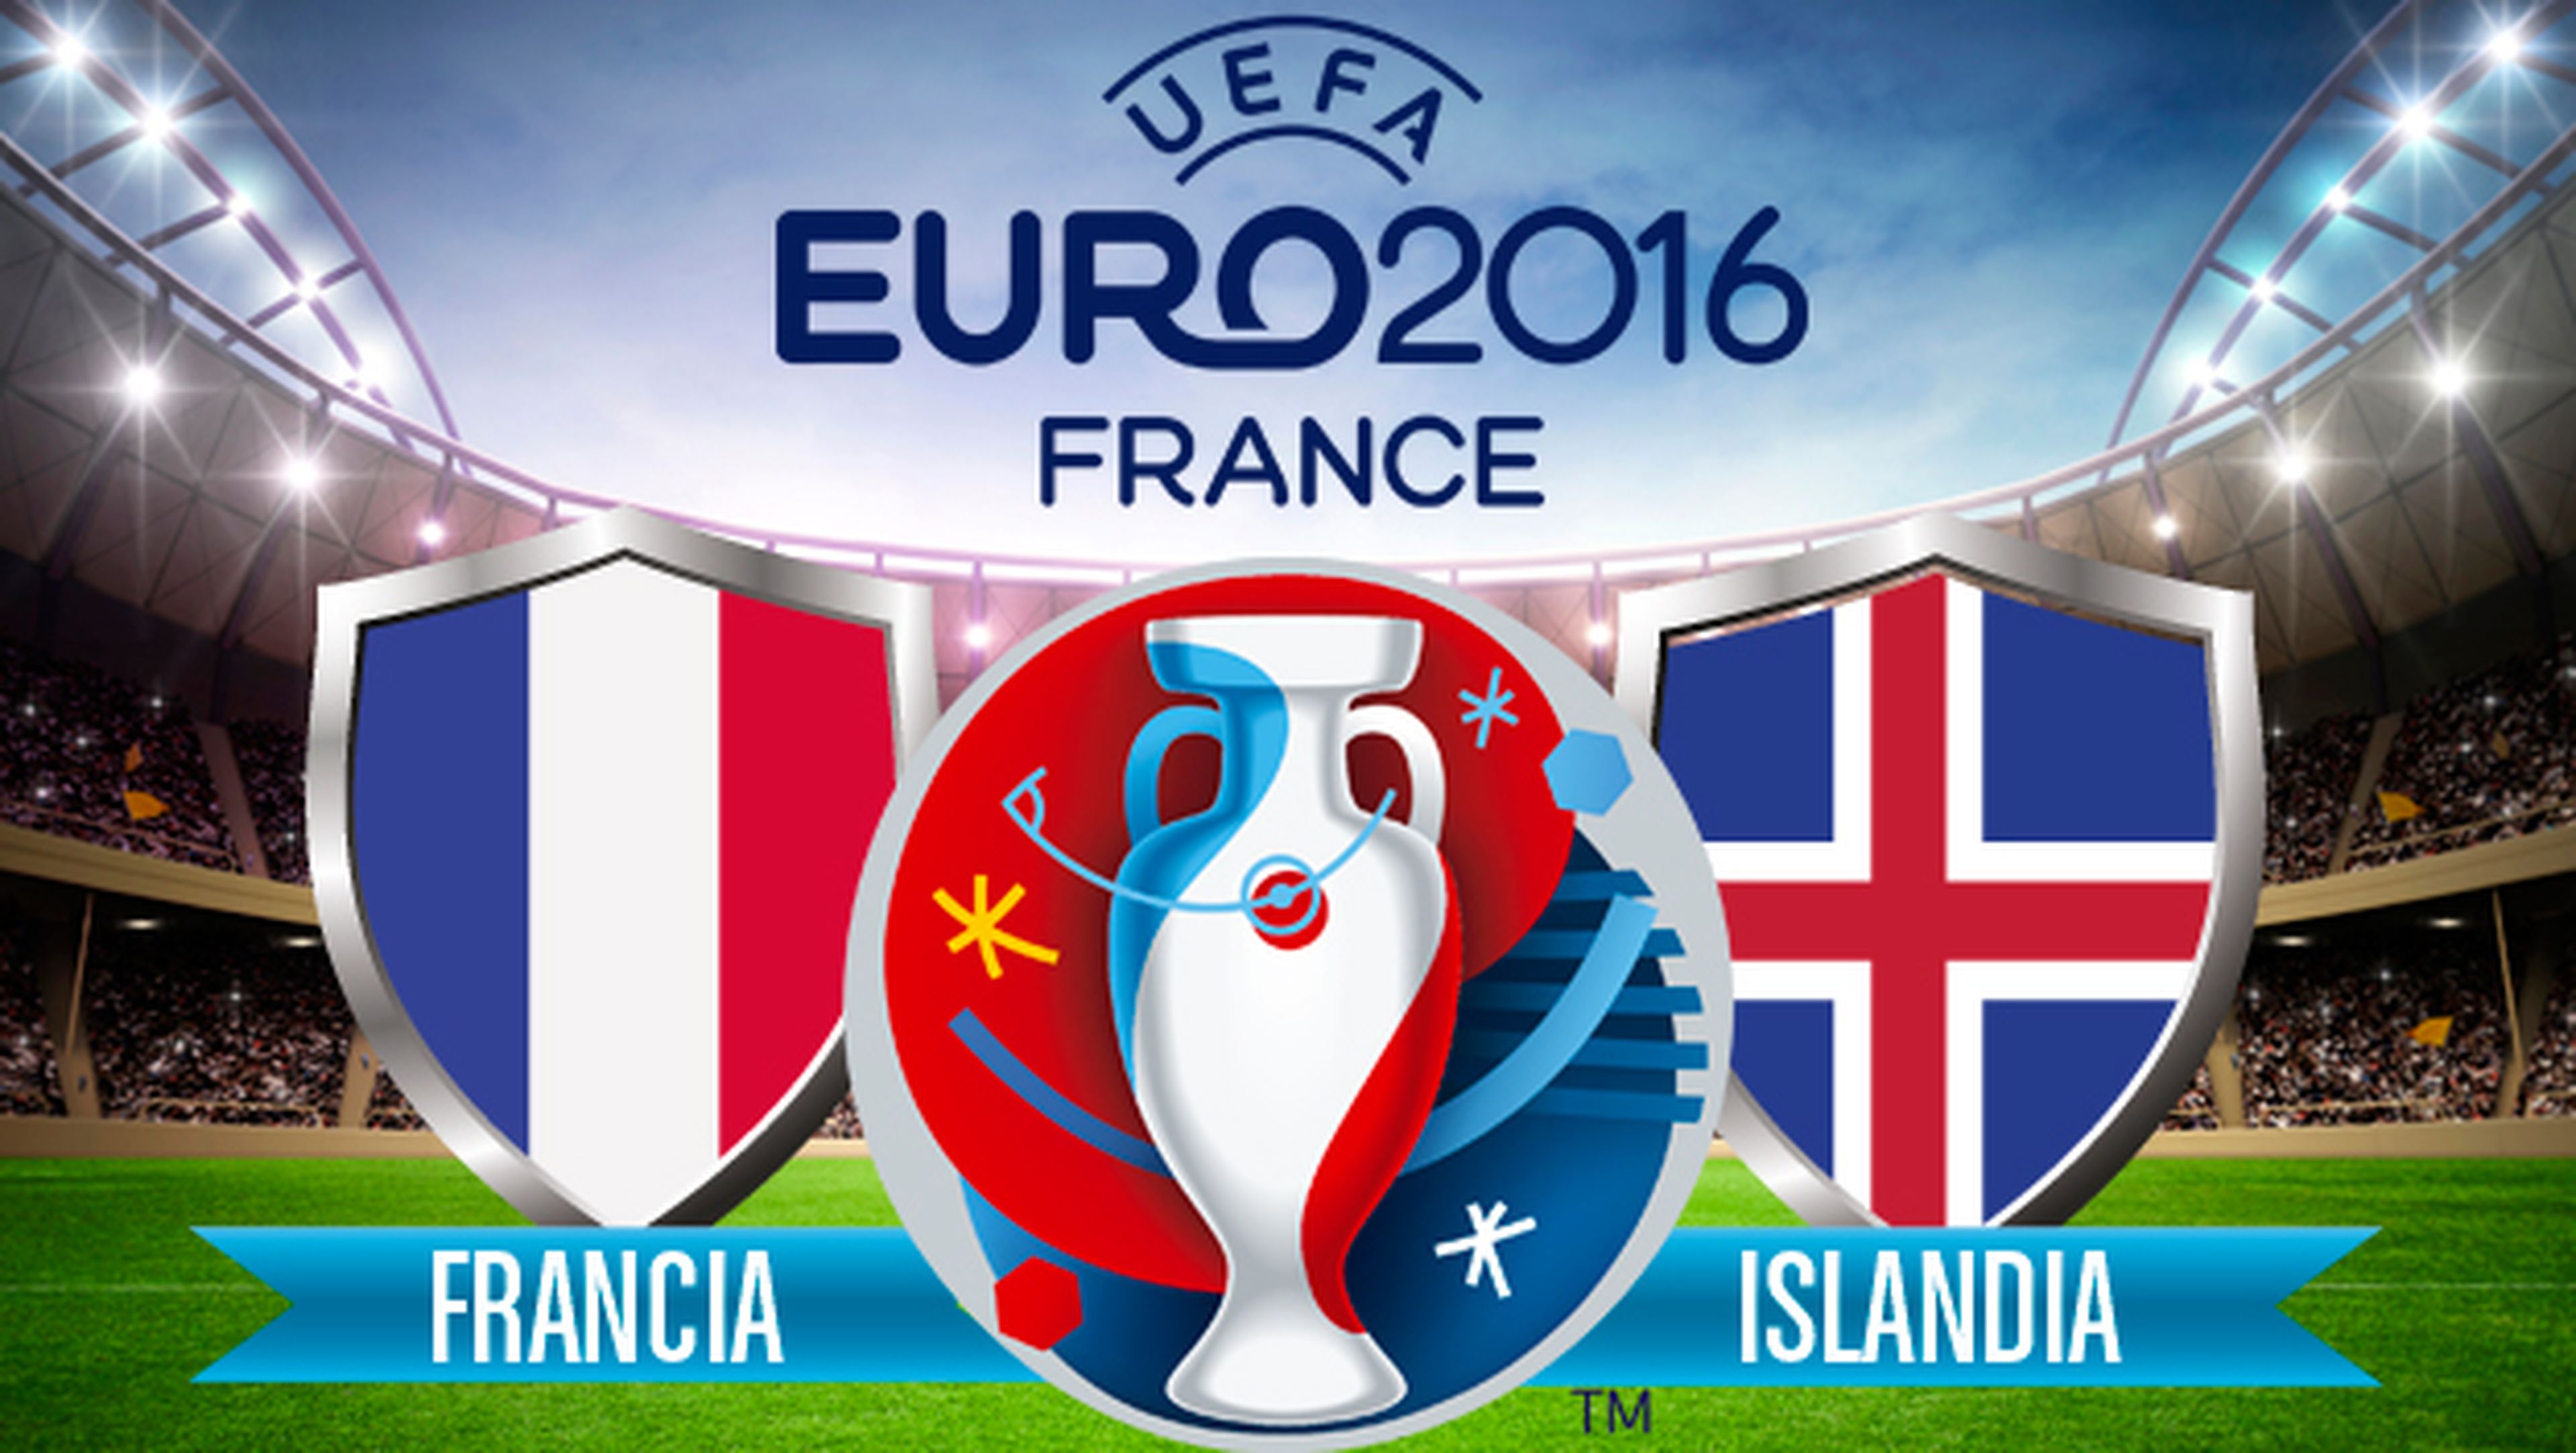 ver online francia islandia eurocopa en directo por internet en streaming